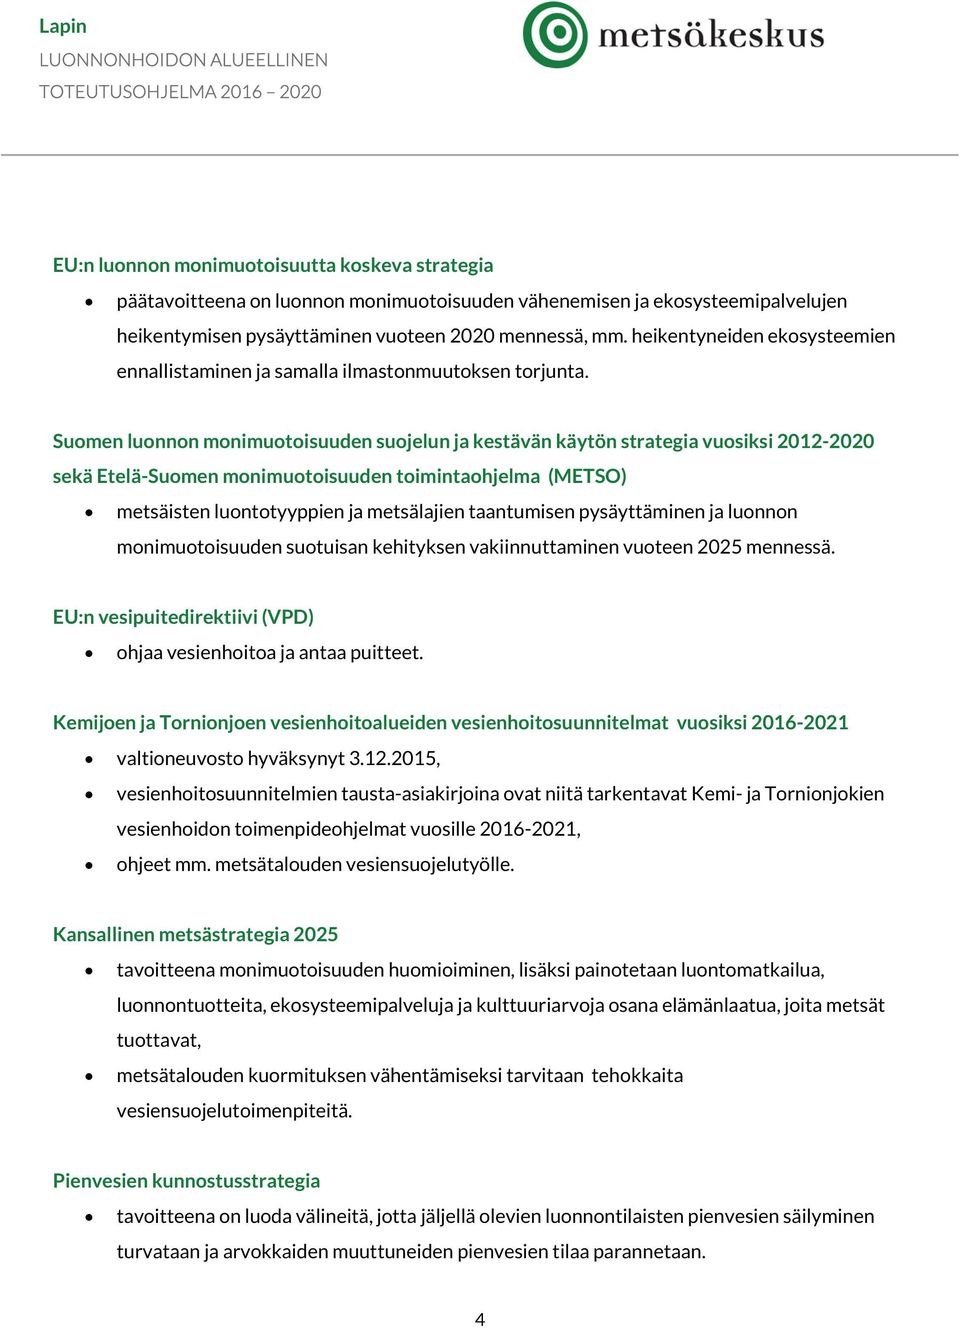 Suomen luonnon monimuotoisuuden suojelun ja kestävän käytön strategia vuosiksi 2012-2020 sekä Etelä-Suomen monimuotoisuuden toimintaohjelma (METSO) metsäisten luontotyyppien ja metsälajien